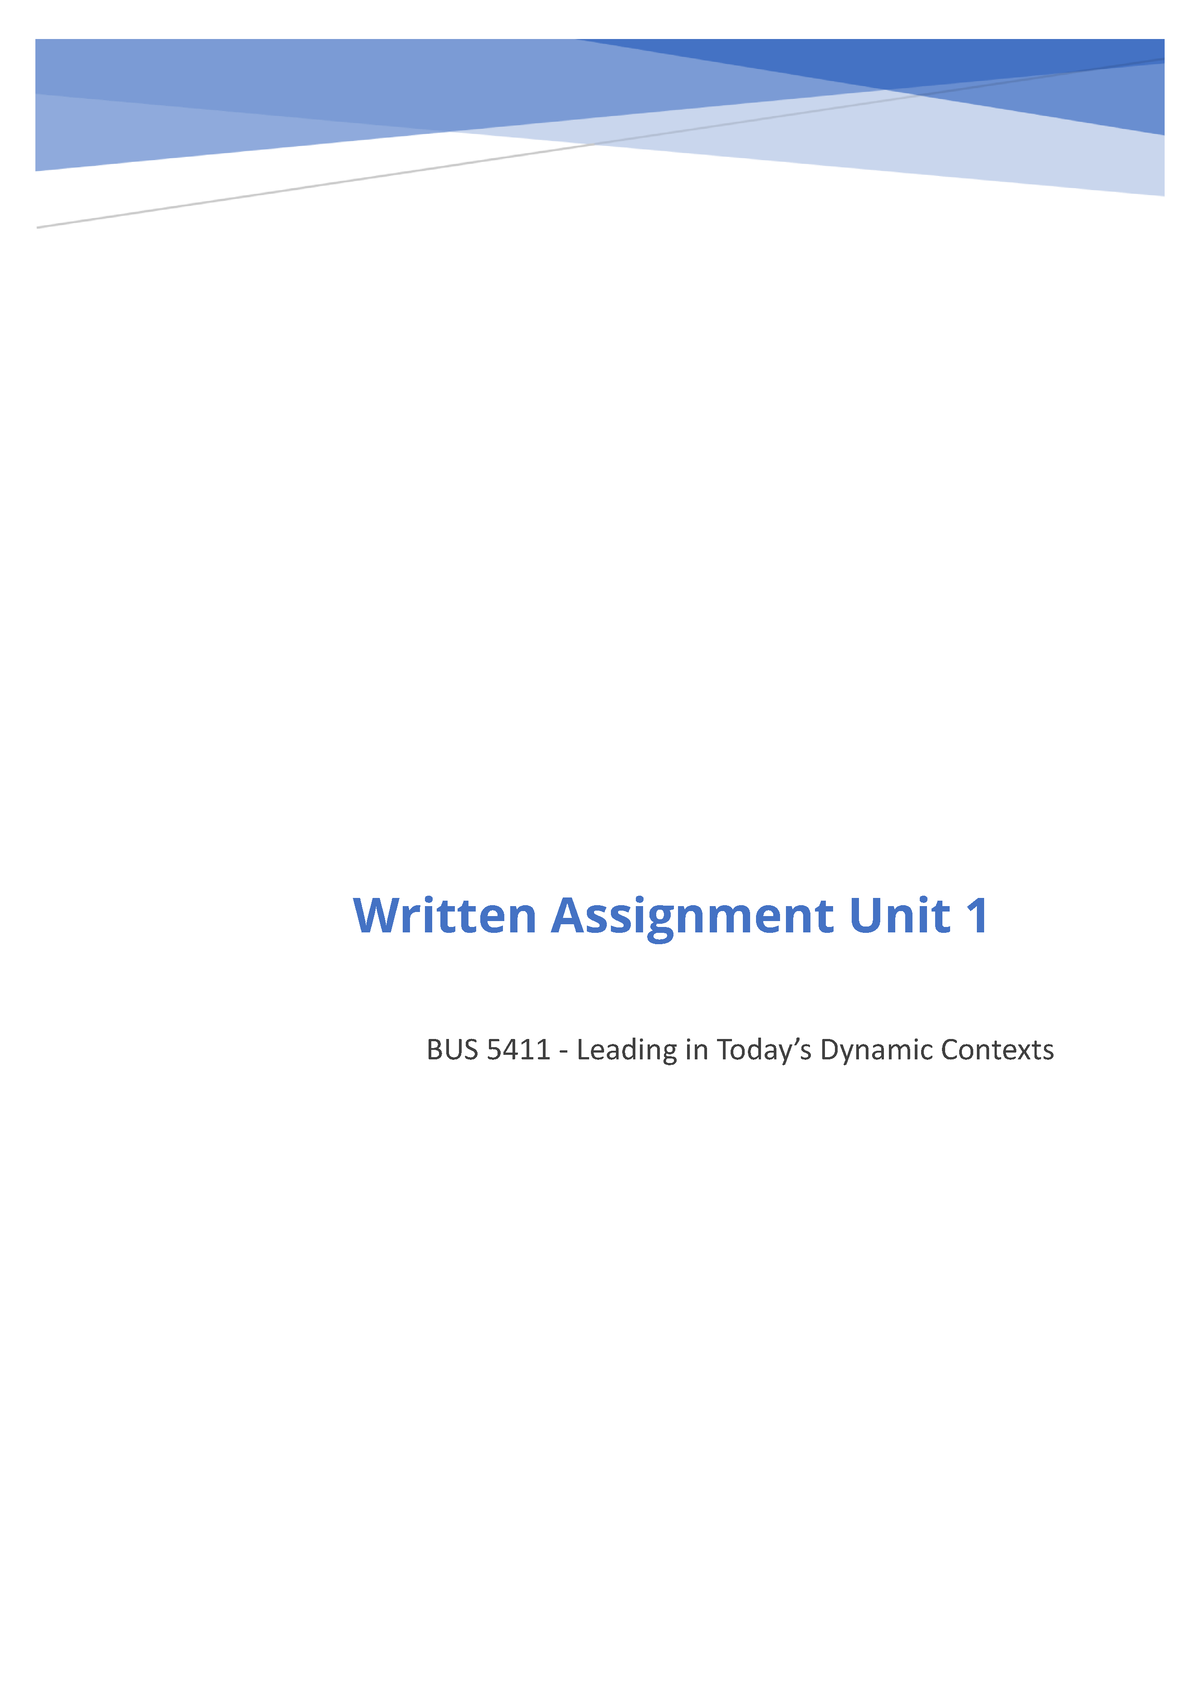 bus 5411 written assignment unit 3